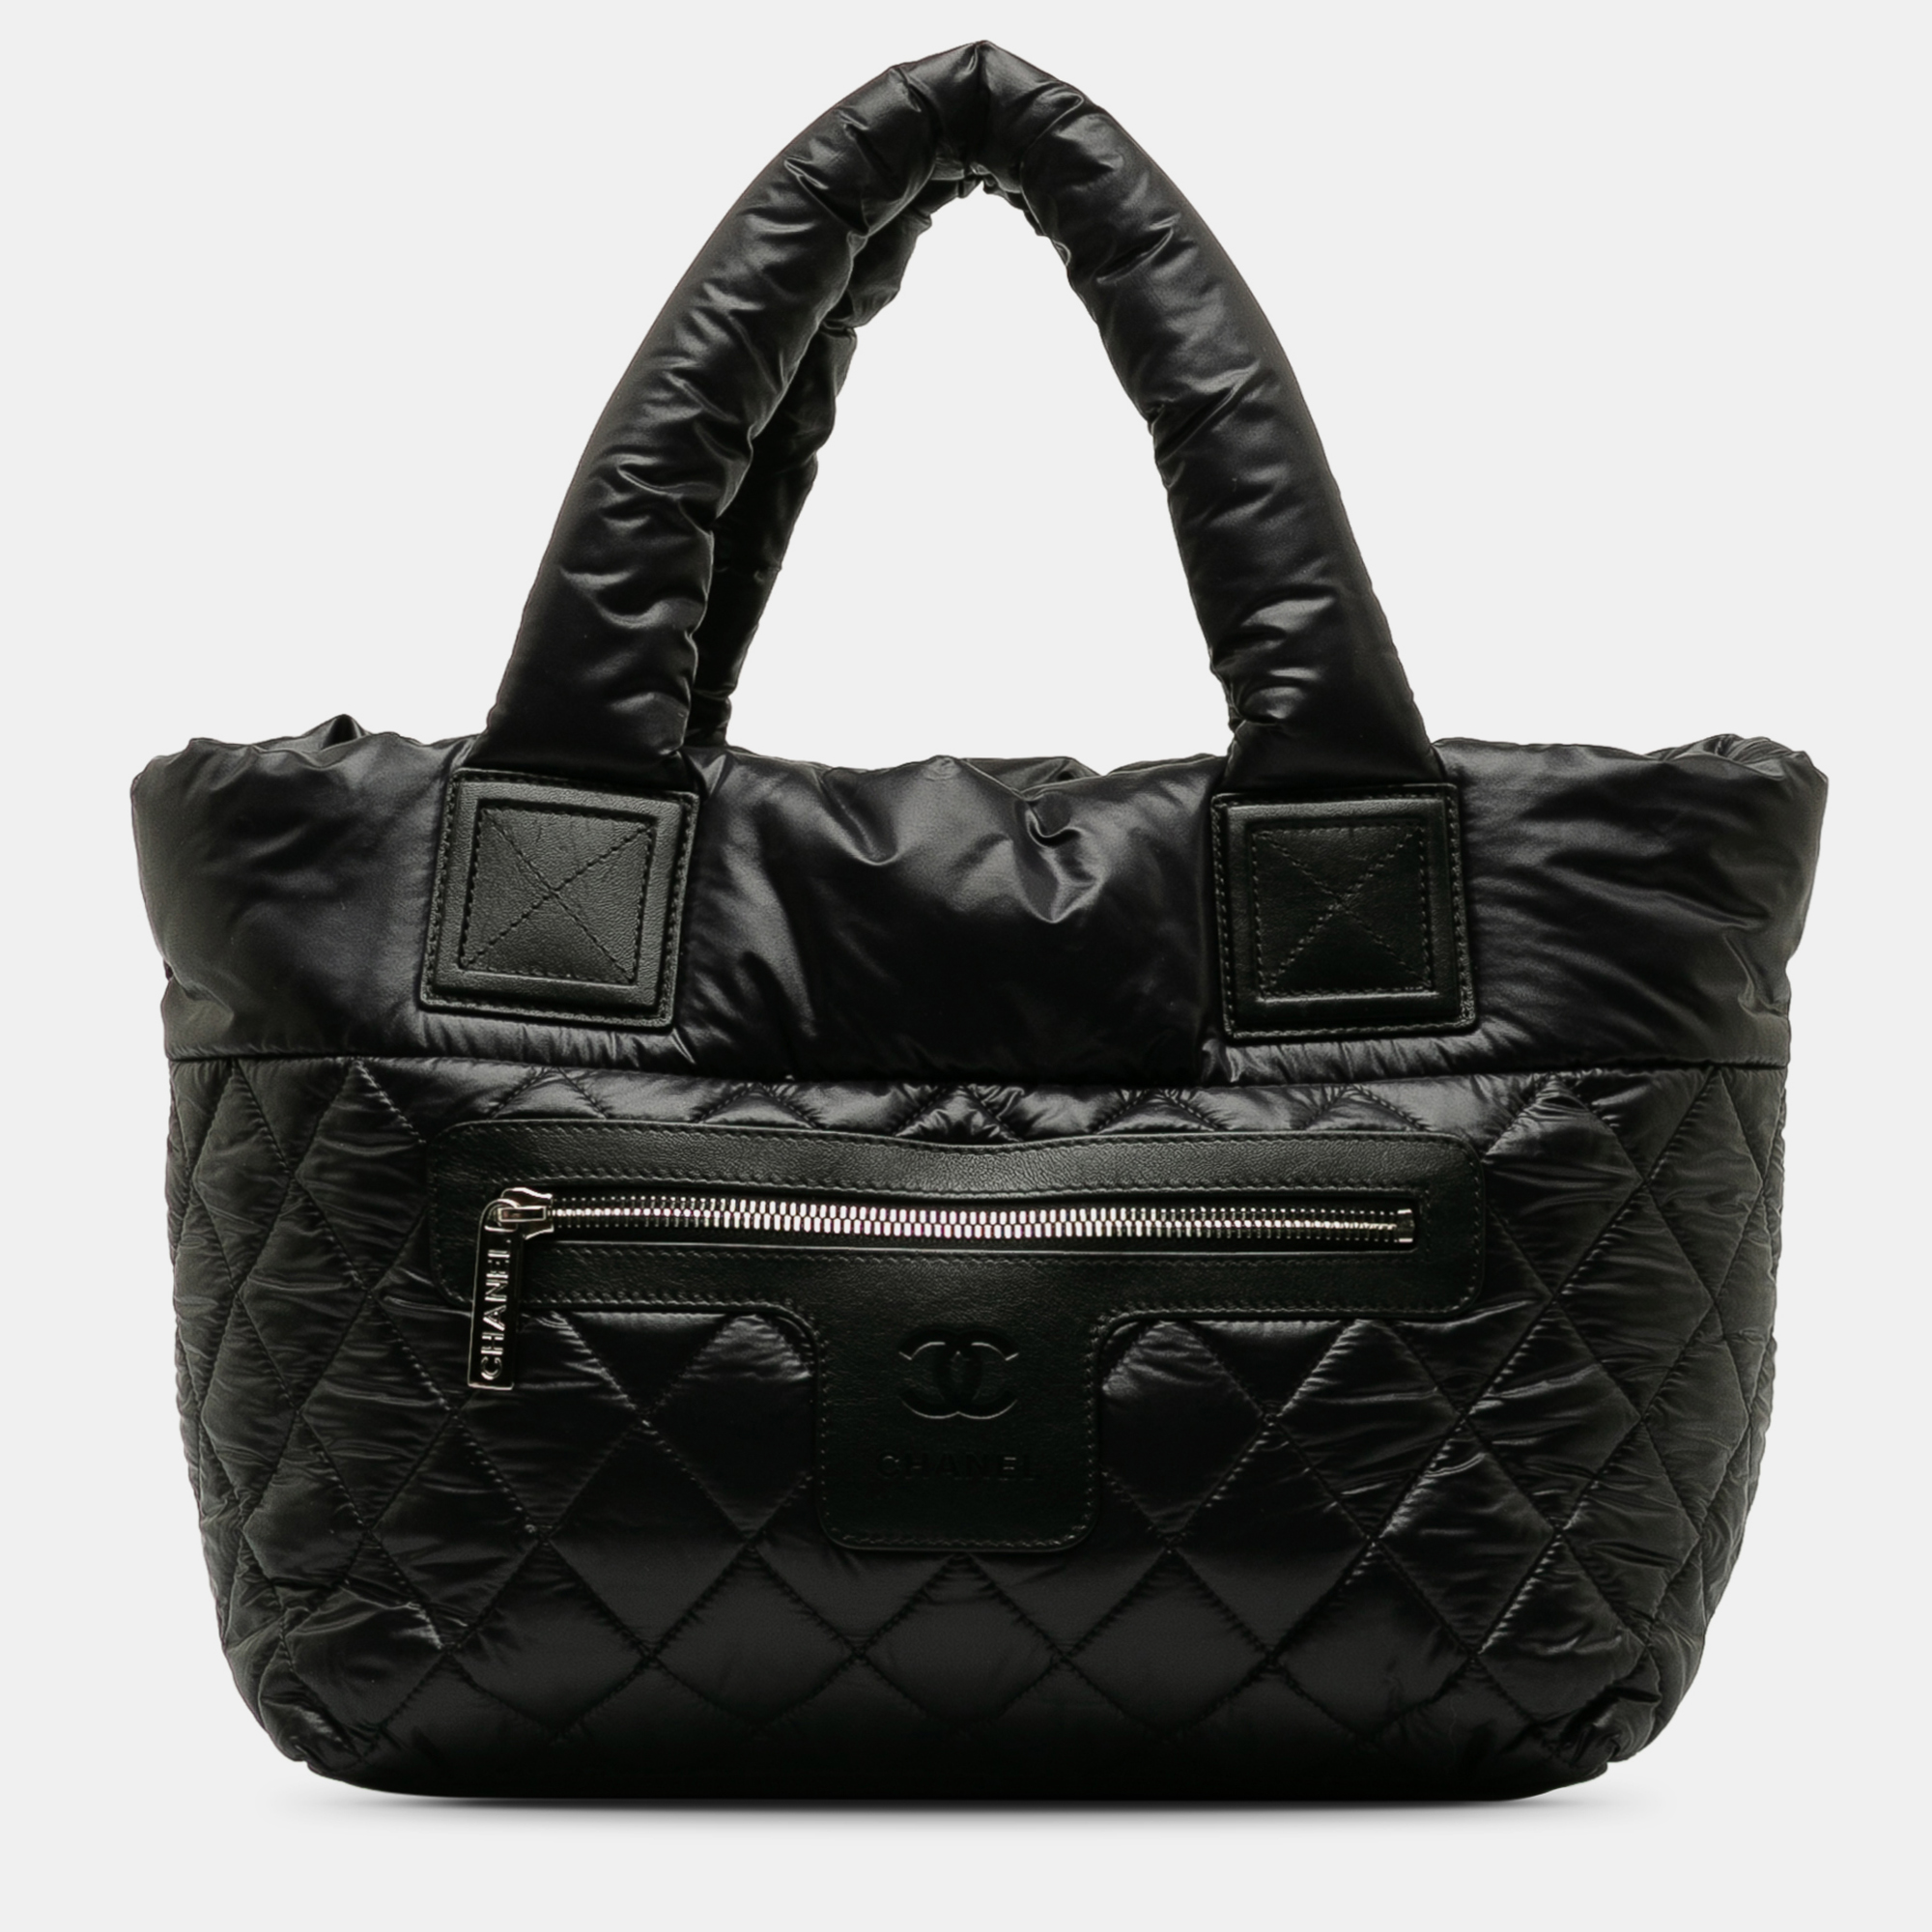 

Chanel Coco Cocoon Tote Bag, Black